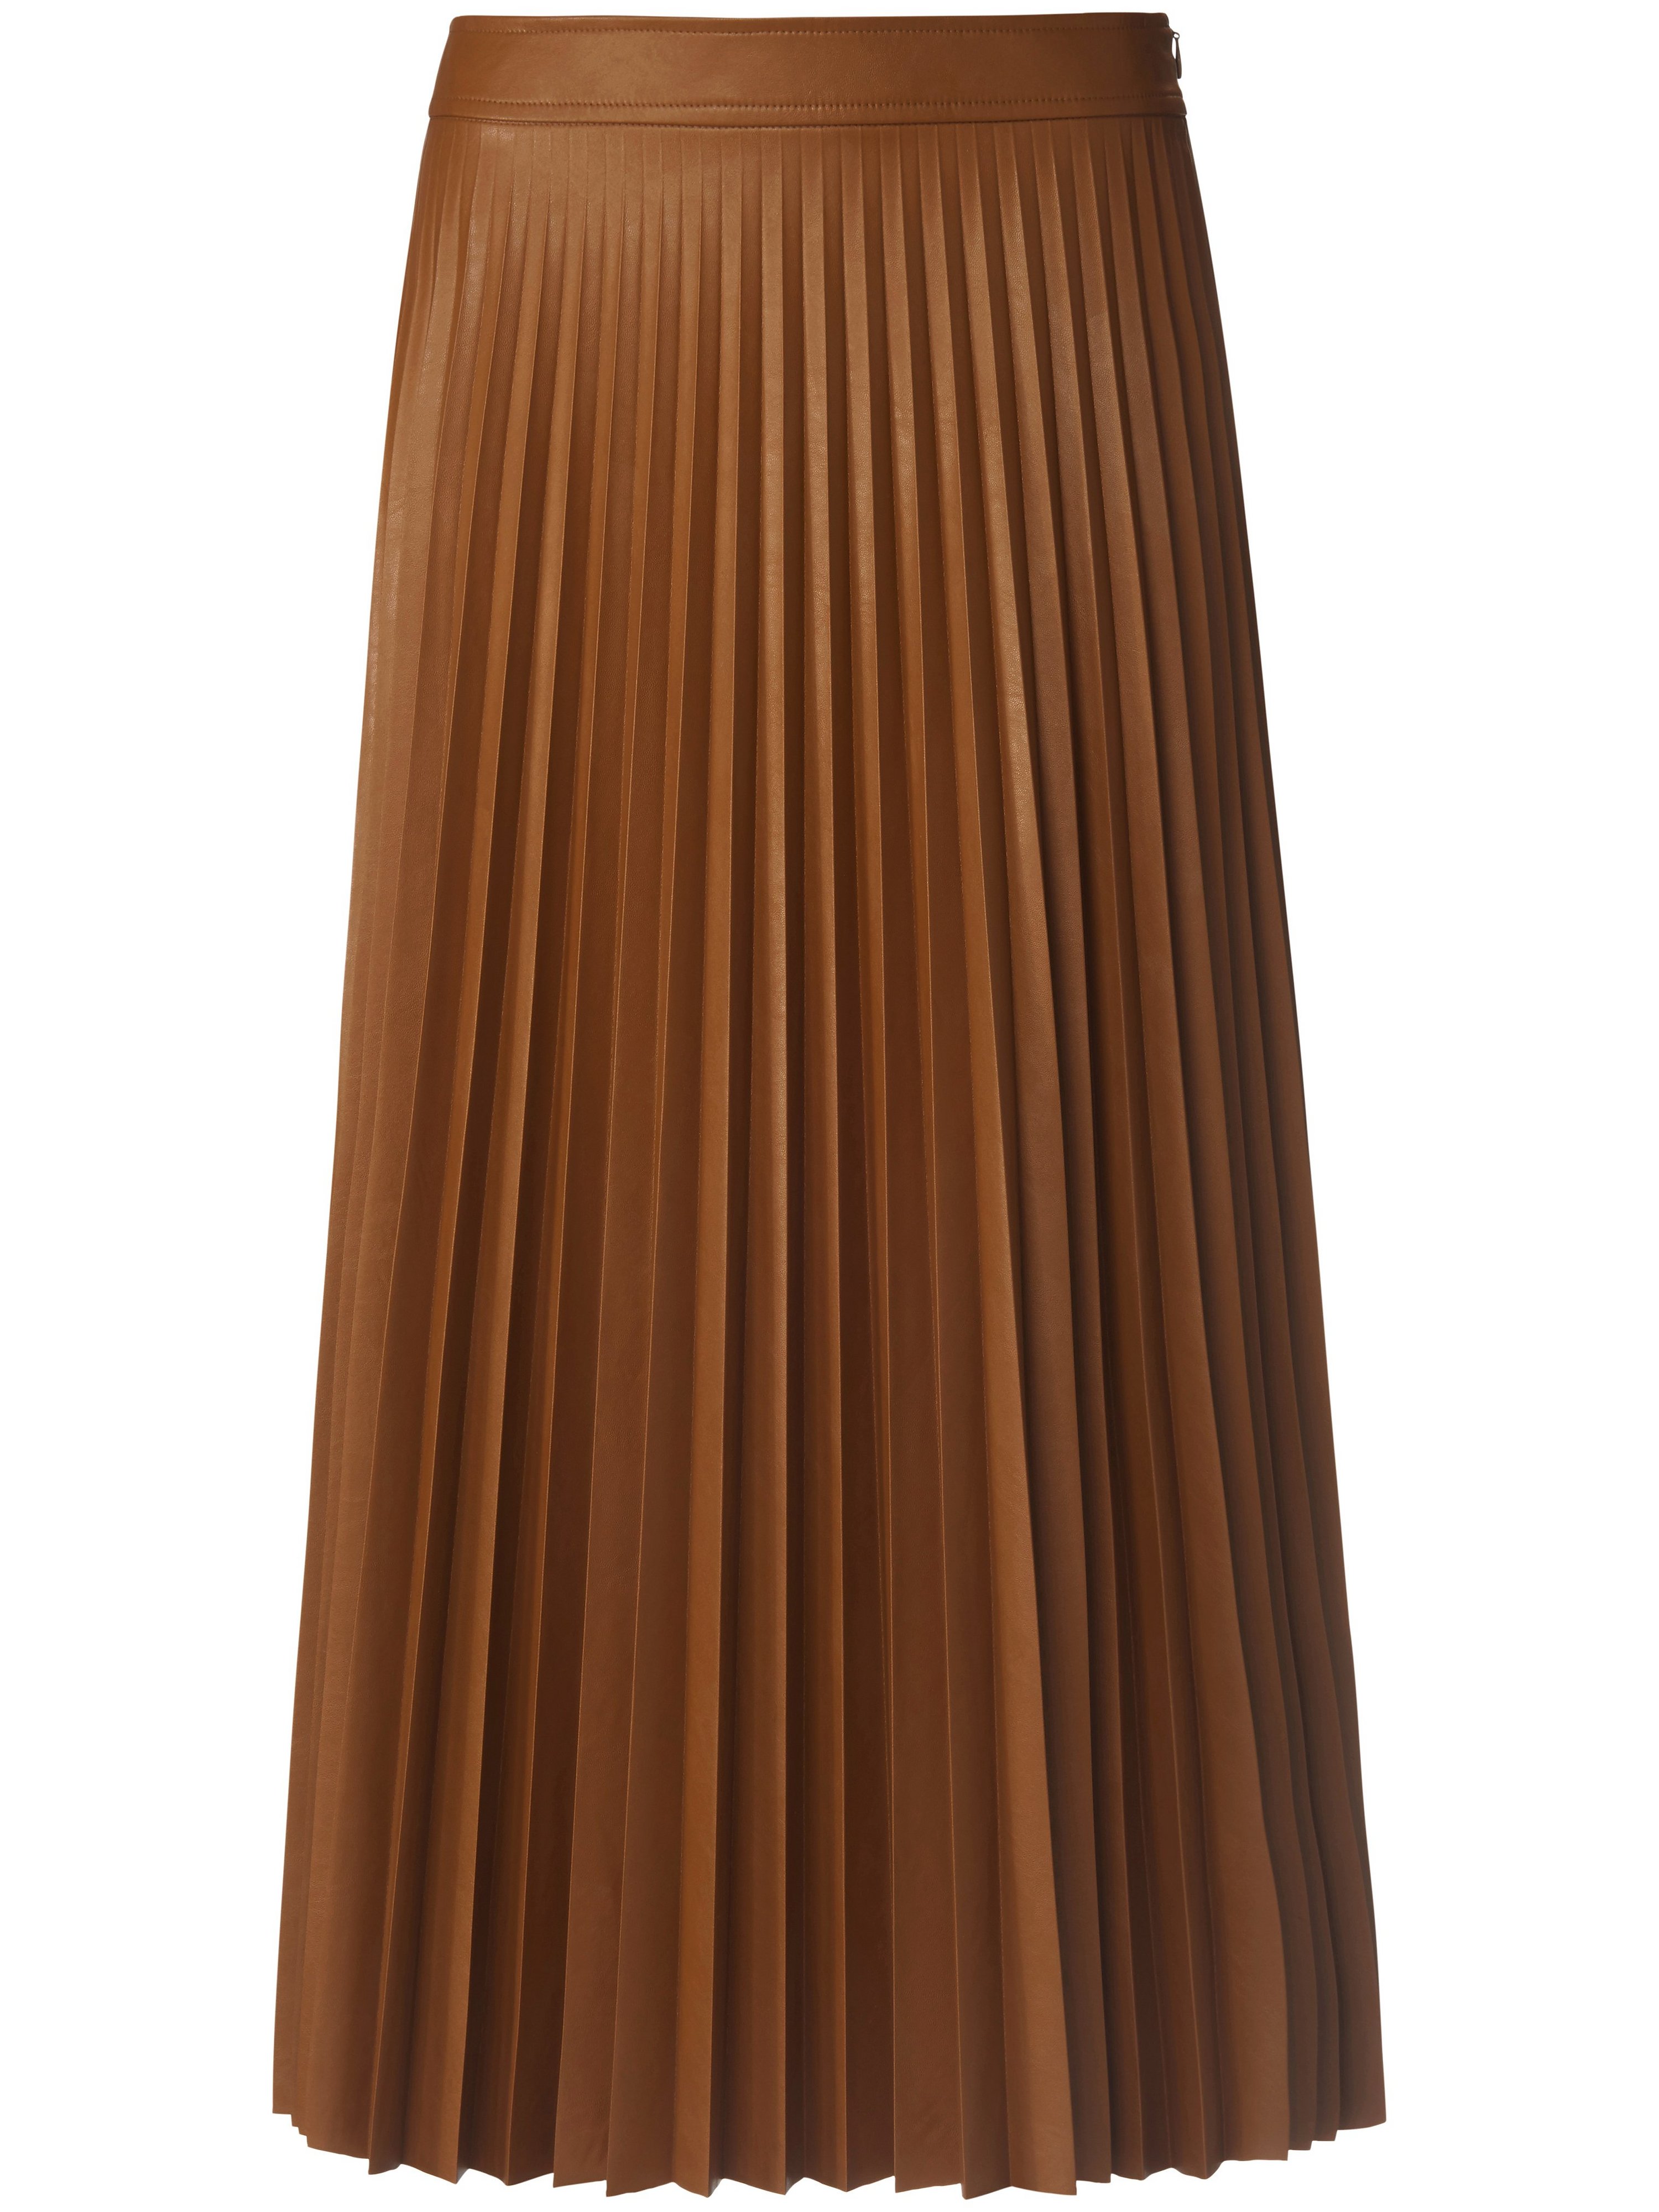 La jupe plissée longueur midi  St. Emile marron taille 44